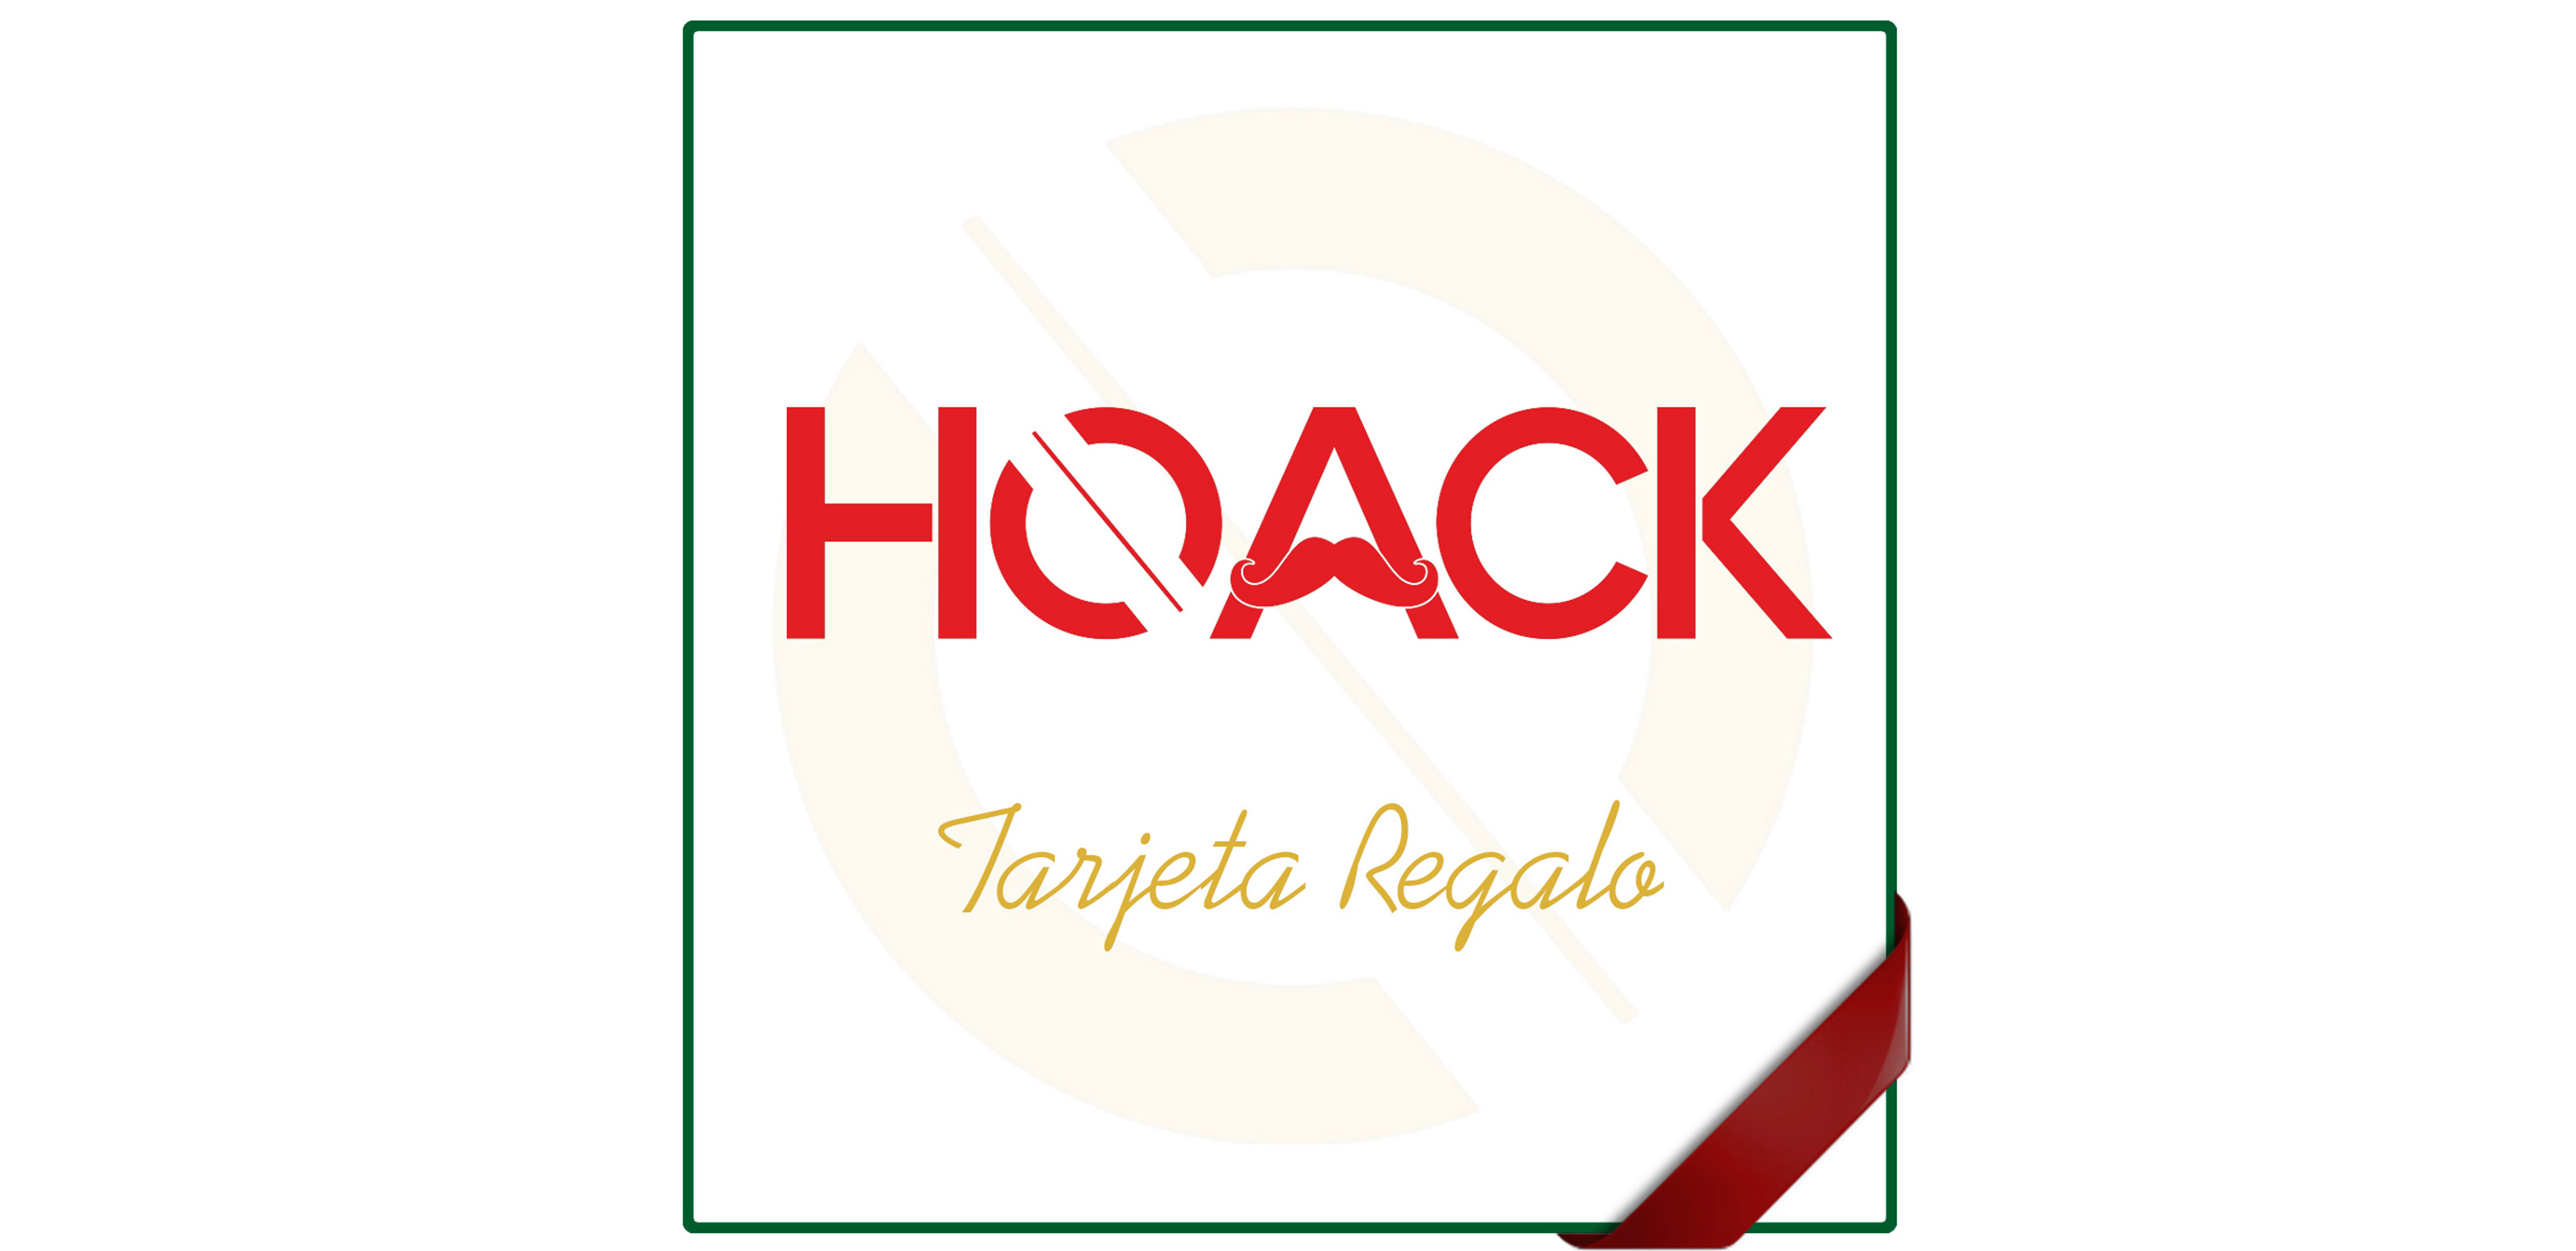 REGALA HOACK